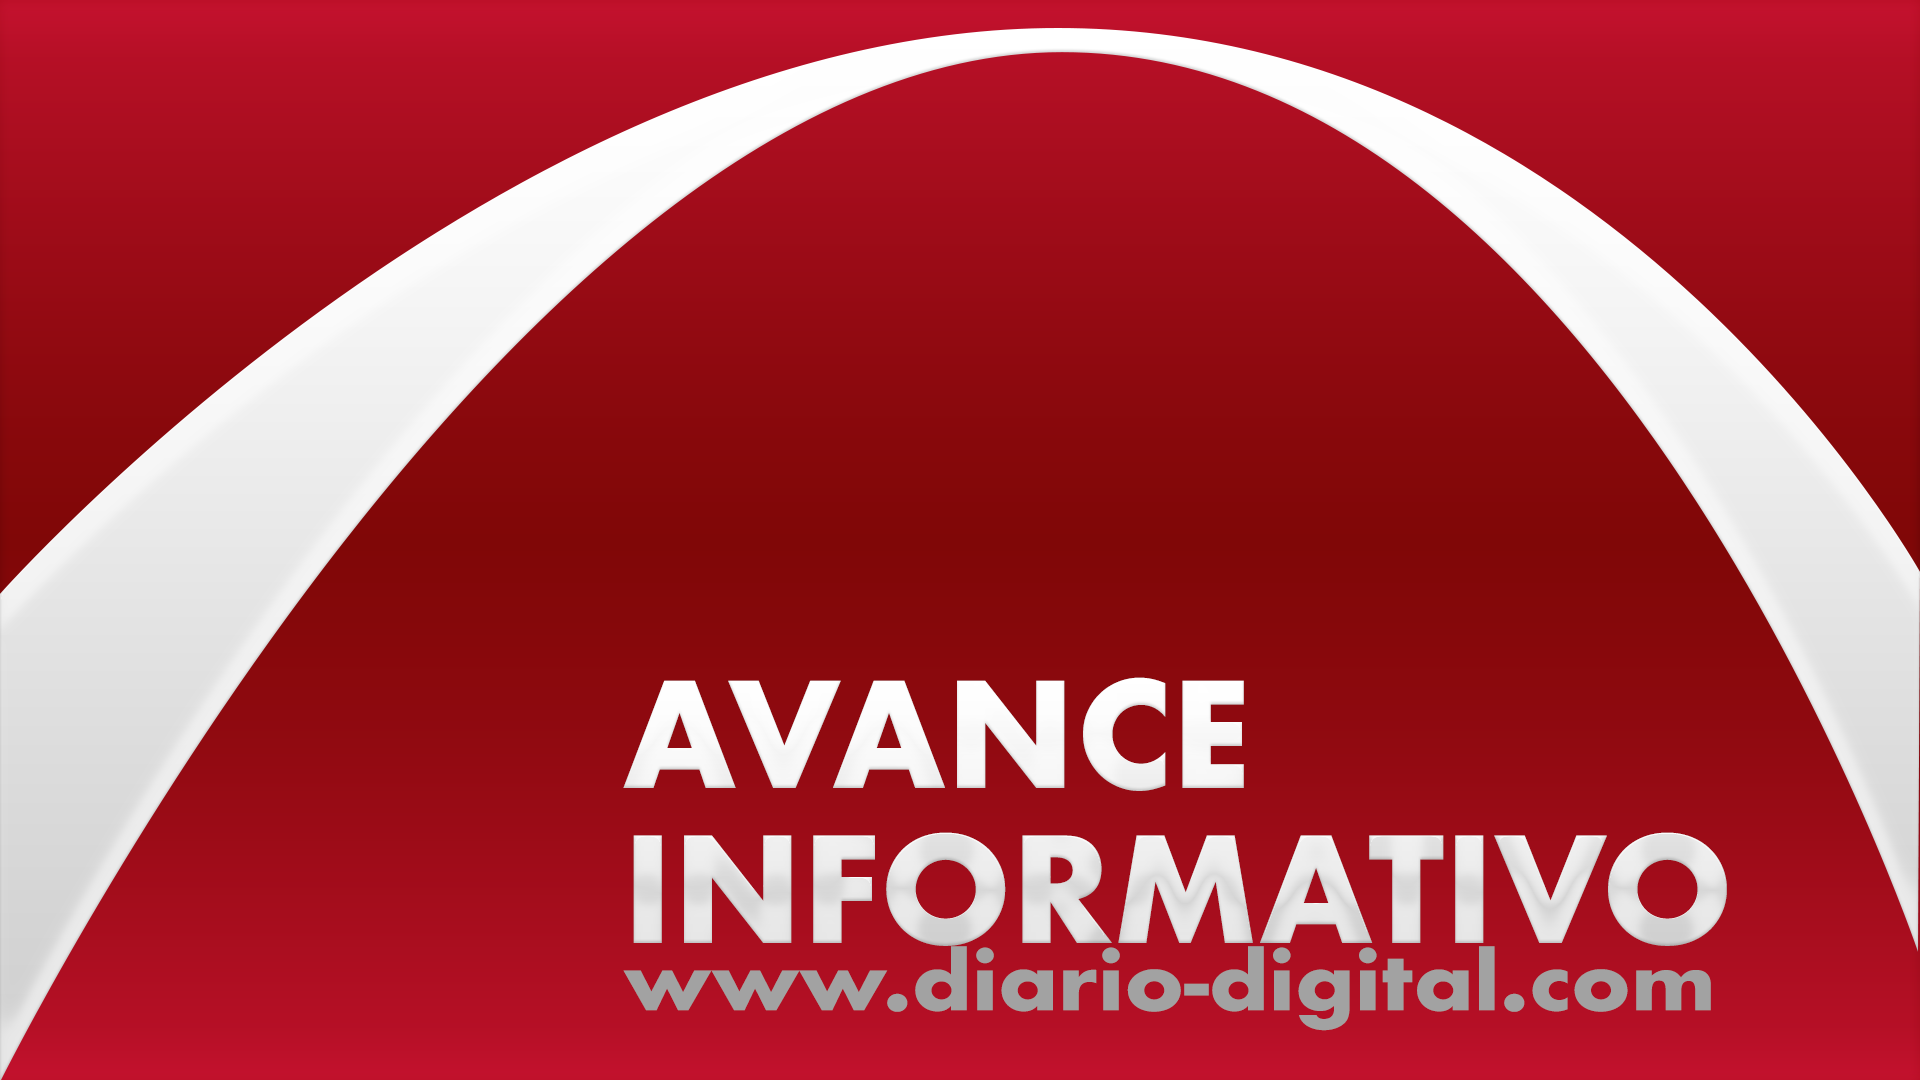 Avance Informativo de Diario-Digital.com